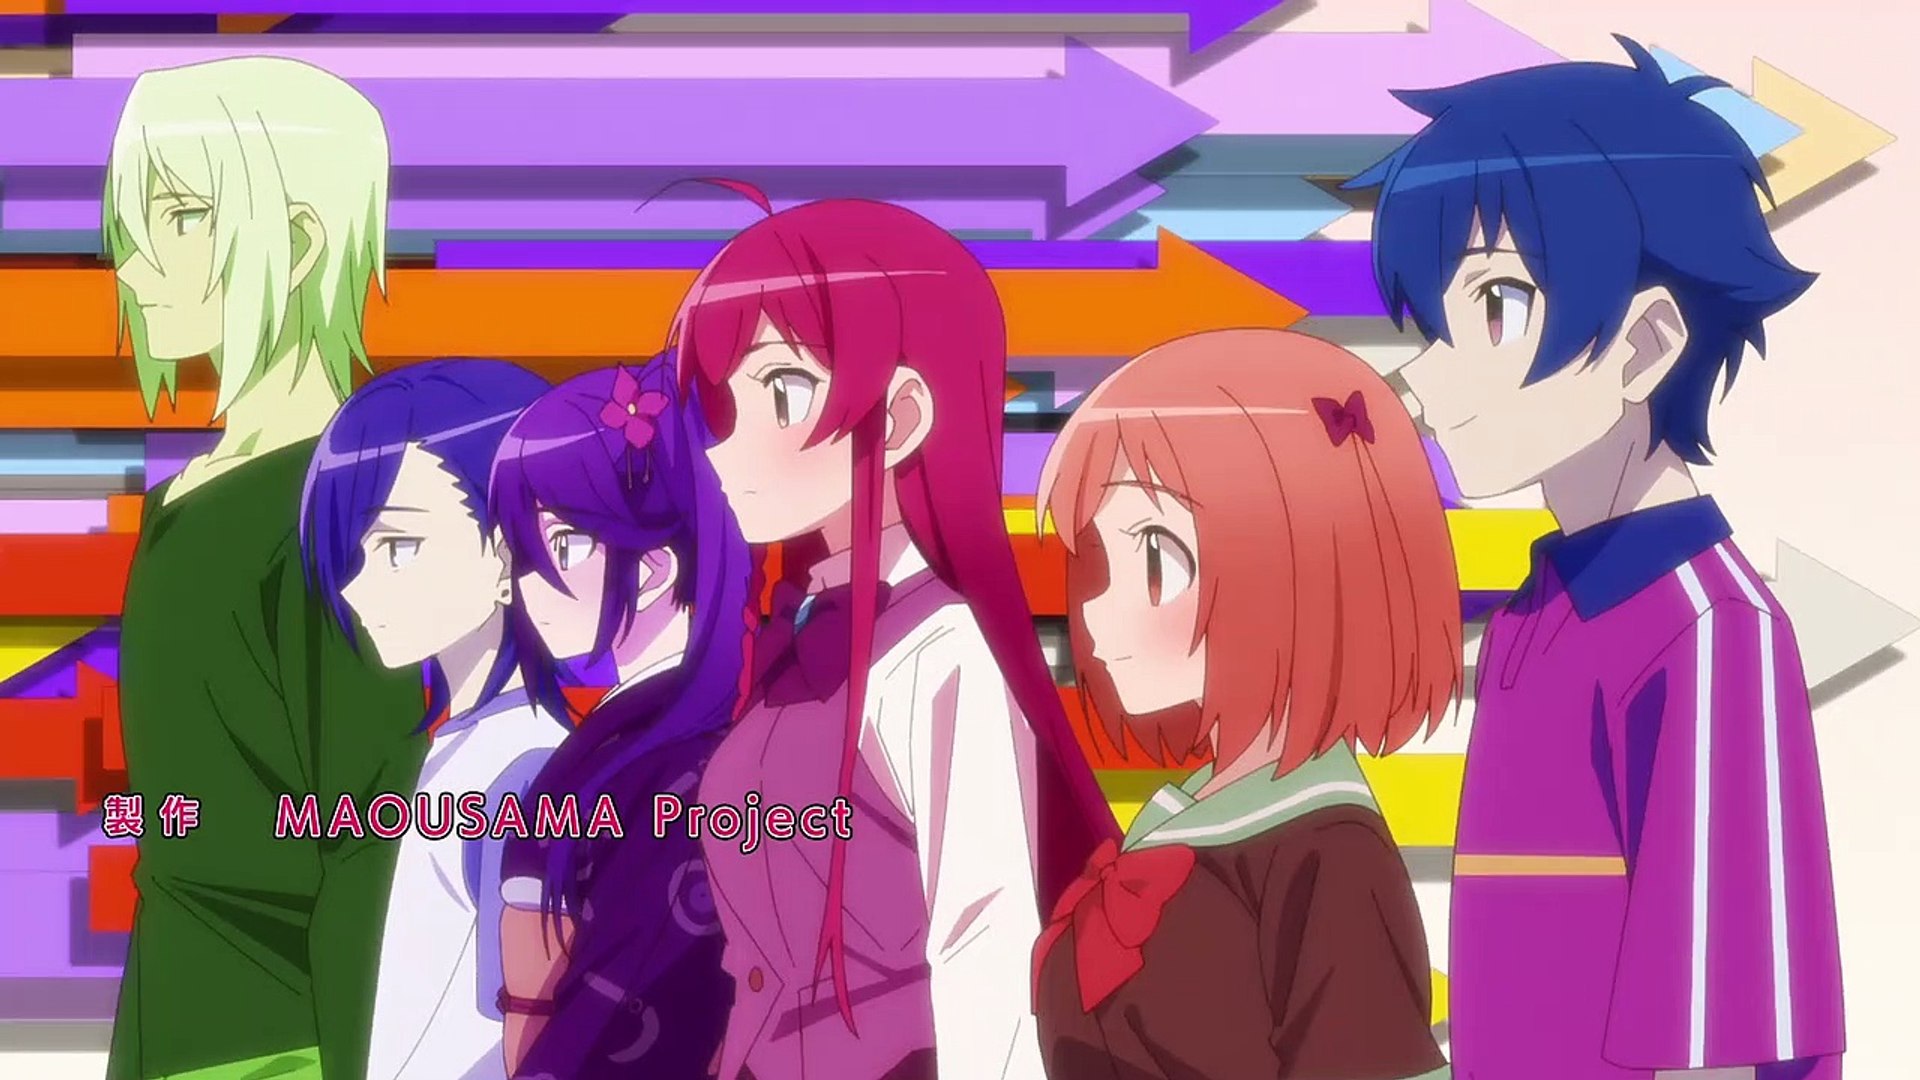 Assistir Hataraku Maou-sama!! 2 Temporada Ep 4 » Anime TV Online